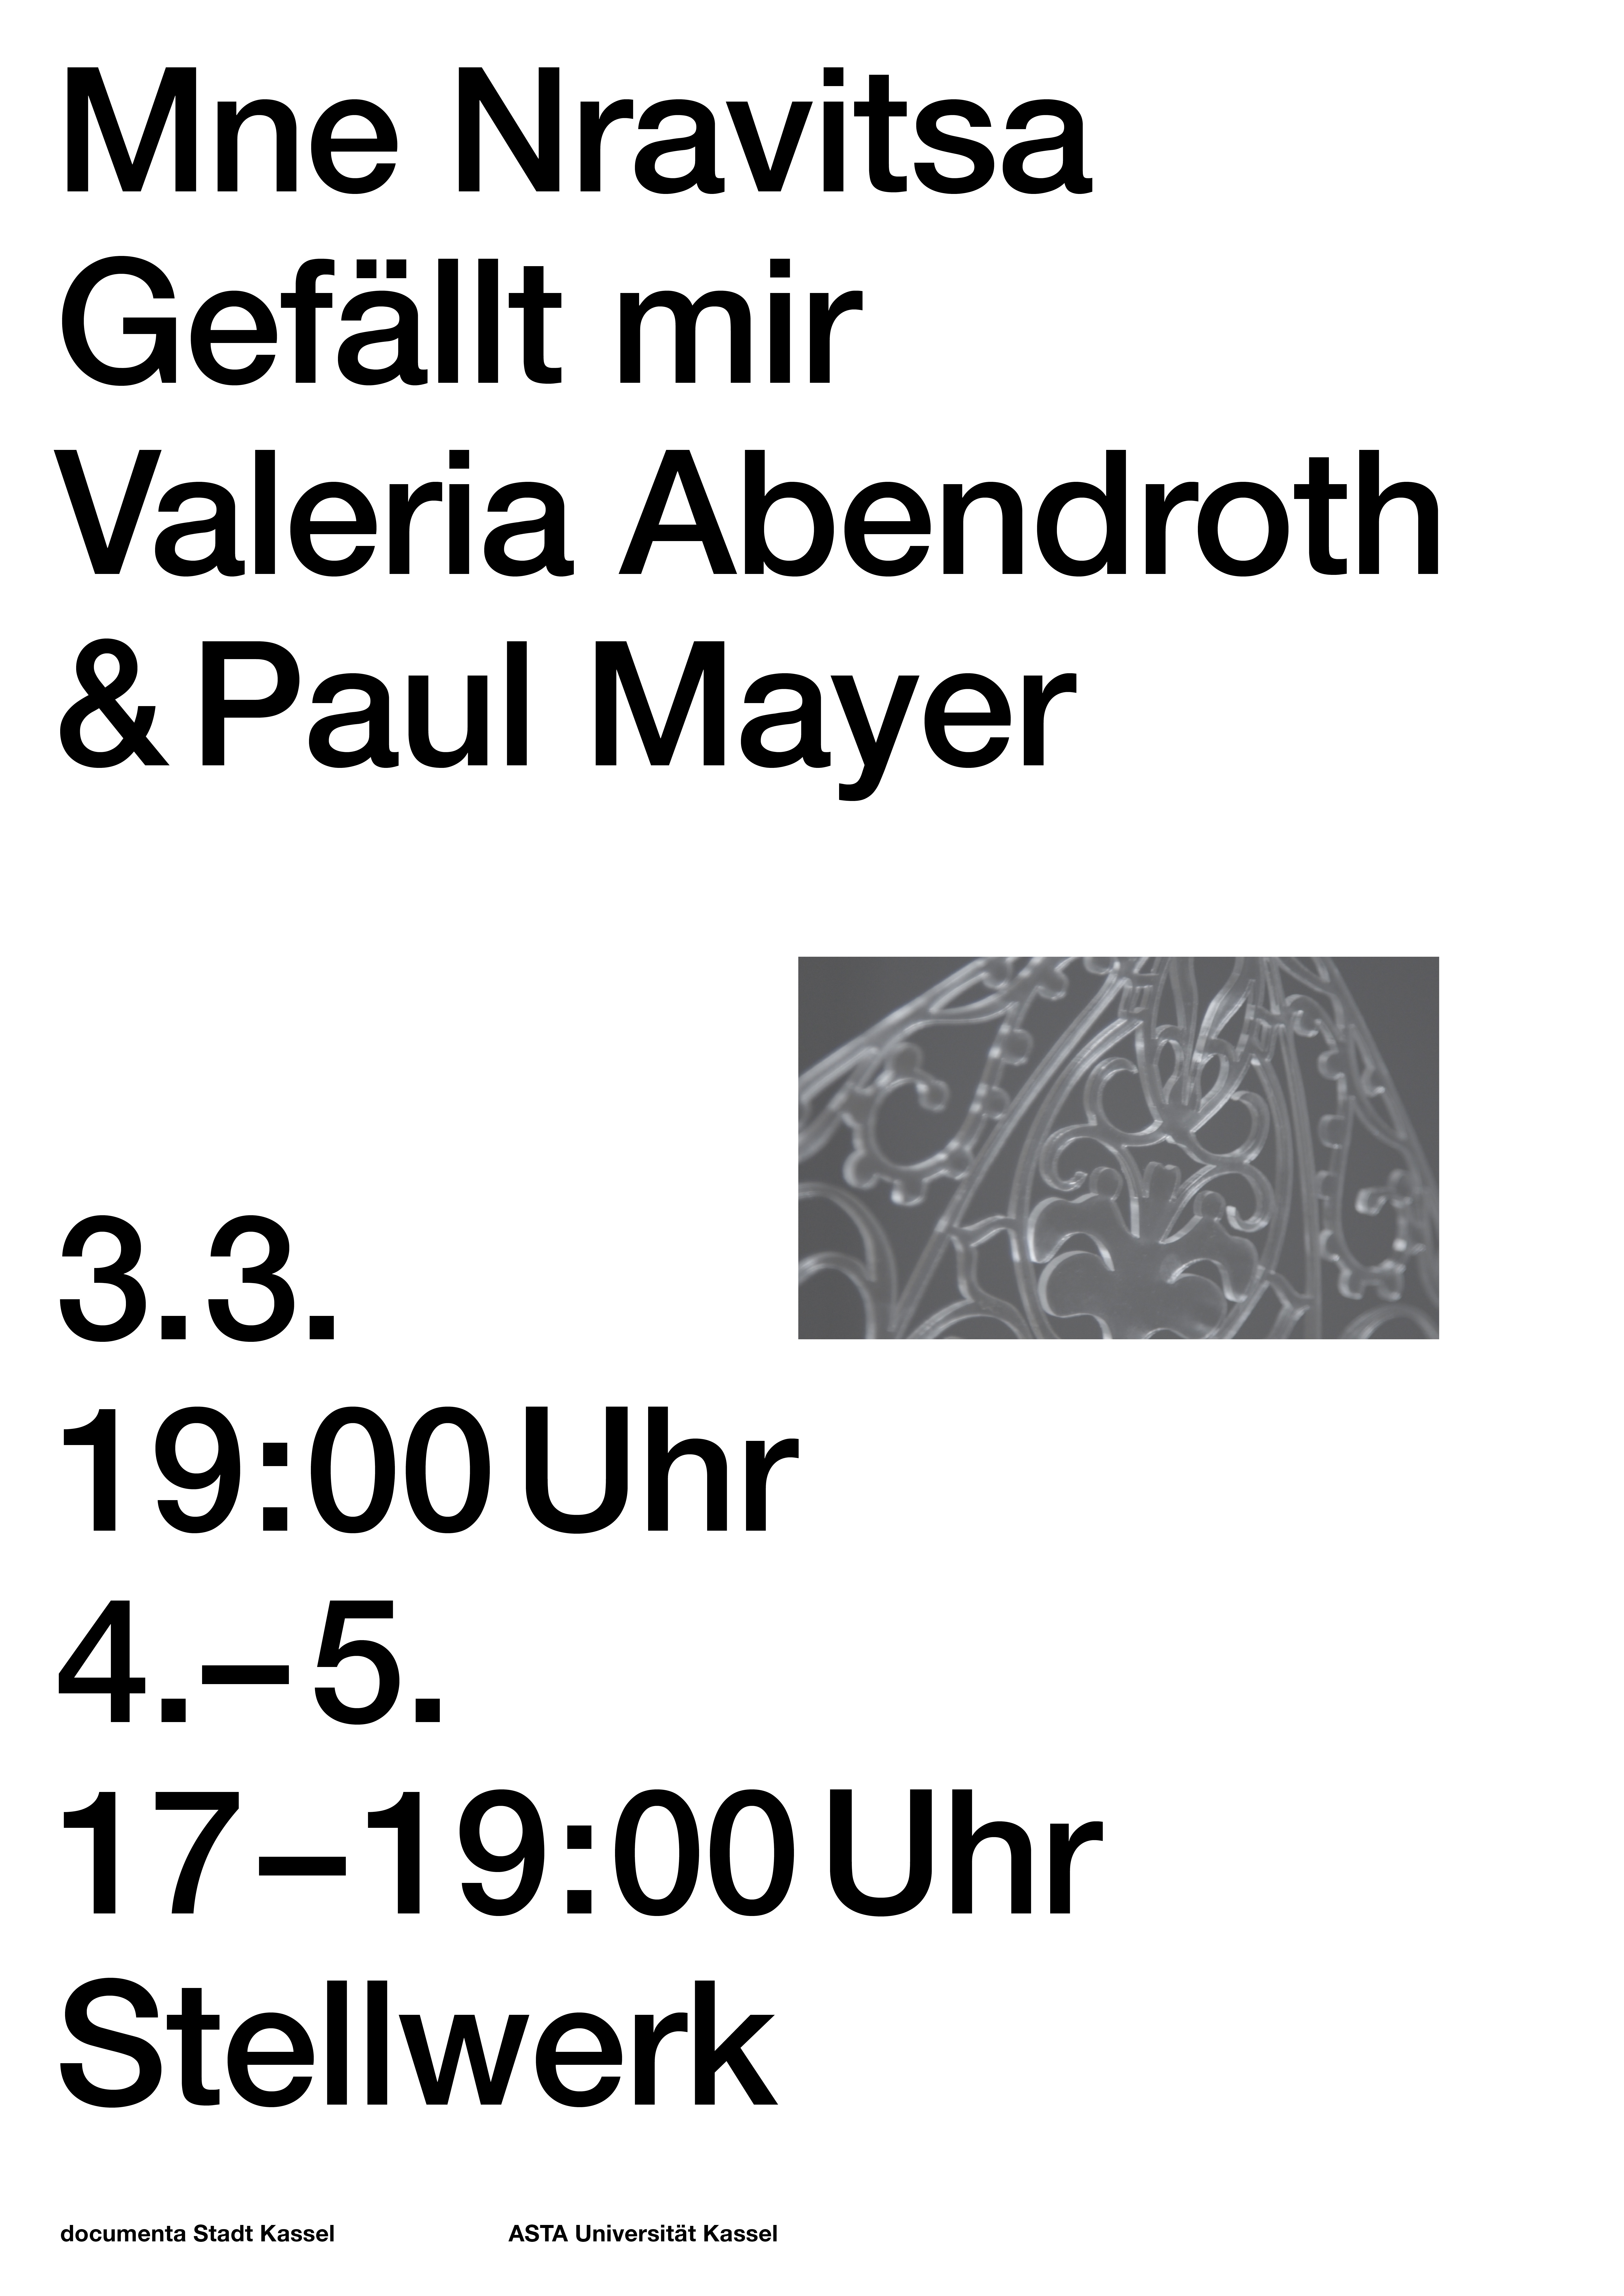 MNE NRAVITSA // Valeria Abendroth in Zusammenarbeit mit Paul Mayer